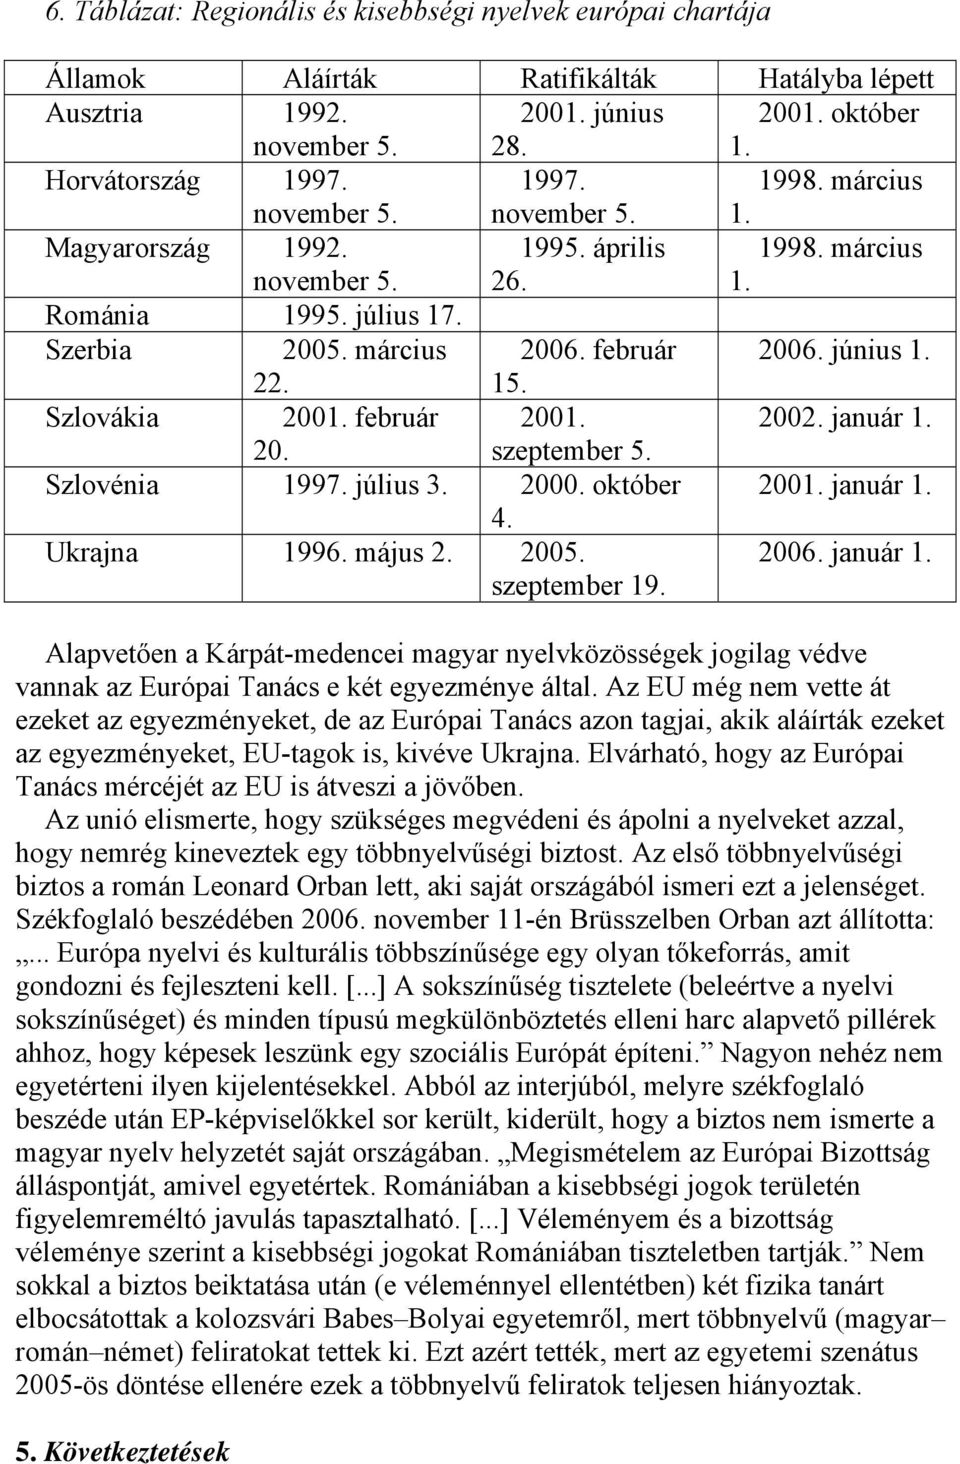 Szlovákia 2001. február 2001. 2002. január 1. 20. szeptember 5. Szlovénia 1997. július 3. 2000. október 2001. január 1. 4. Ukrajna 1996. május 2. 2005. szeptember 19. 2006. január 1. Alapvetően a Kárpát-medencei magyar nyelvközösségek jogilag védve vannak az Európai Tanács e két egyezménye által.